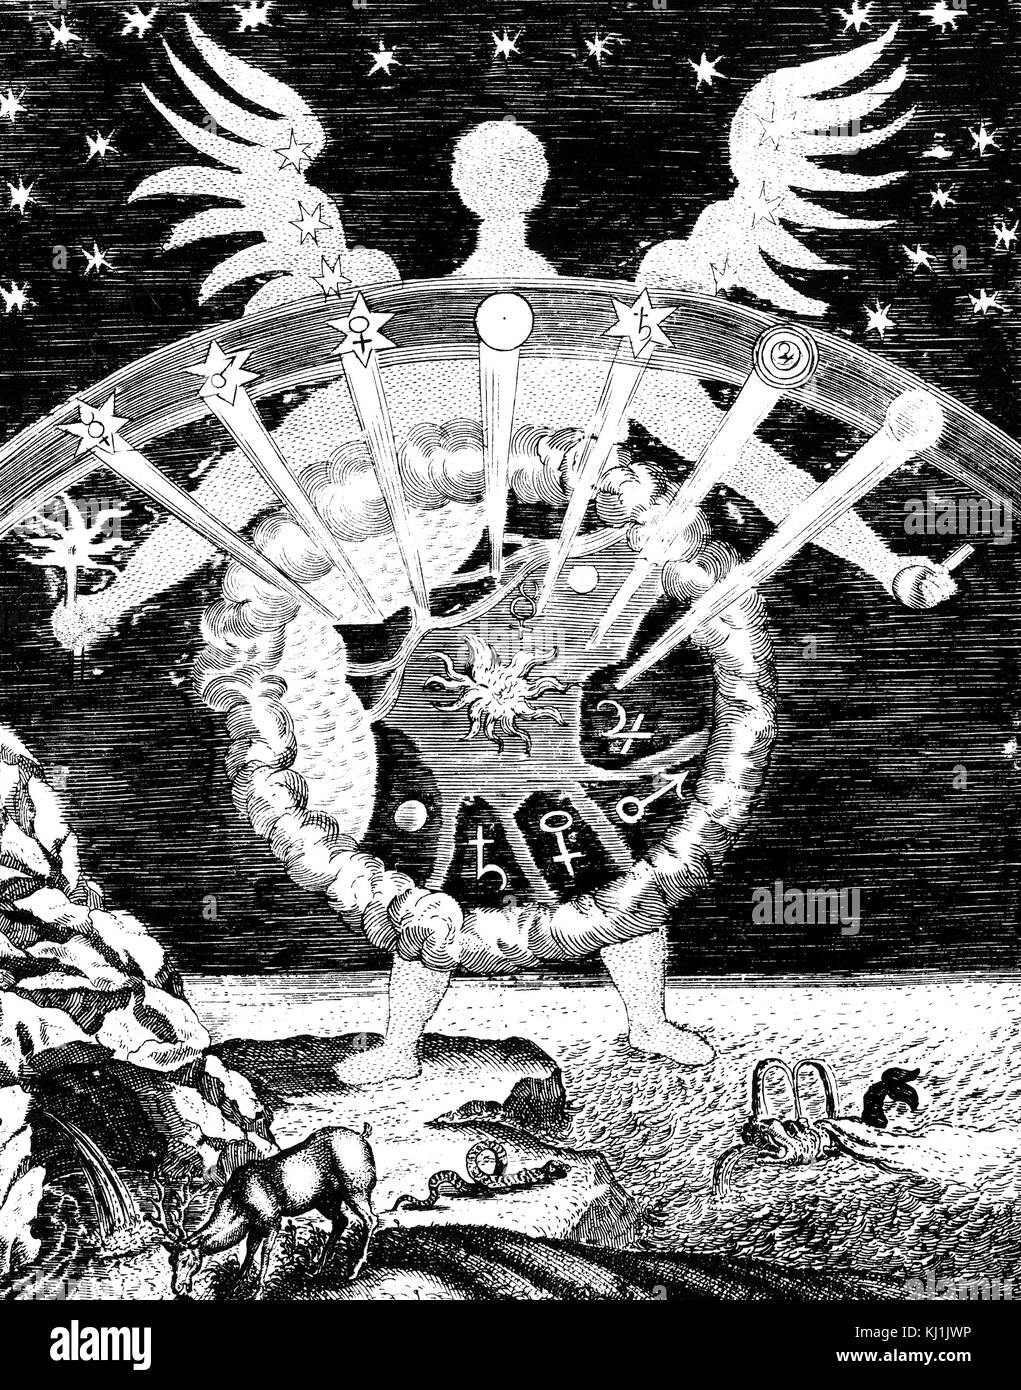 Titelblatt des ersten Buches von 'Magia Naturalis" (Der Ursachen von wunderbaren Dingen), zeigen die vier Elemente (Feuer, Wasser, Erde, Luft) und die sieben Planeten mit ihren zugehörigen Körpersäfte. Vom 16. Jahrhundert Stockfoto